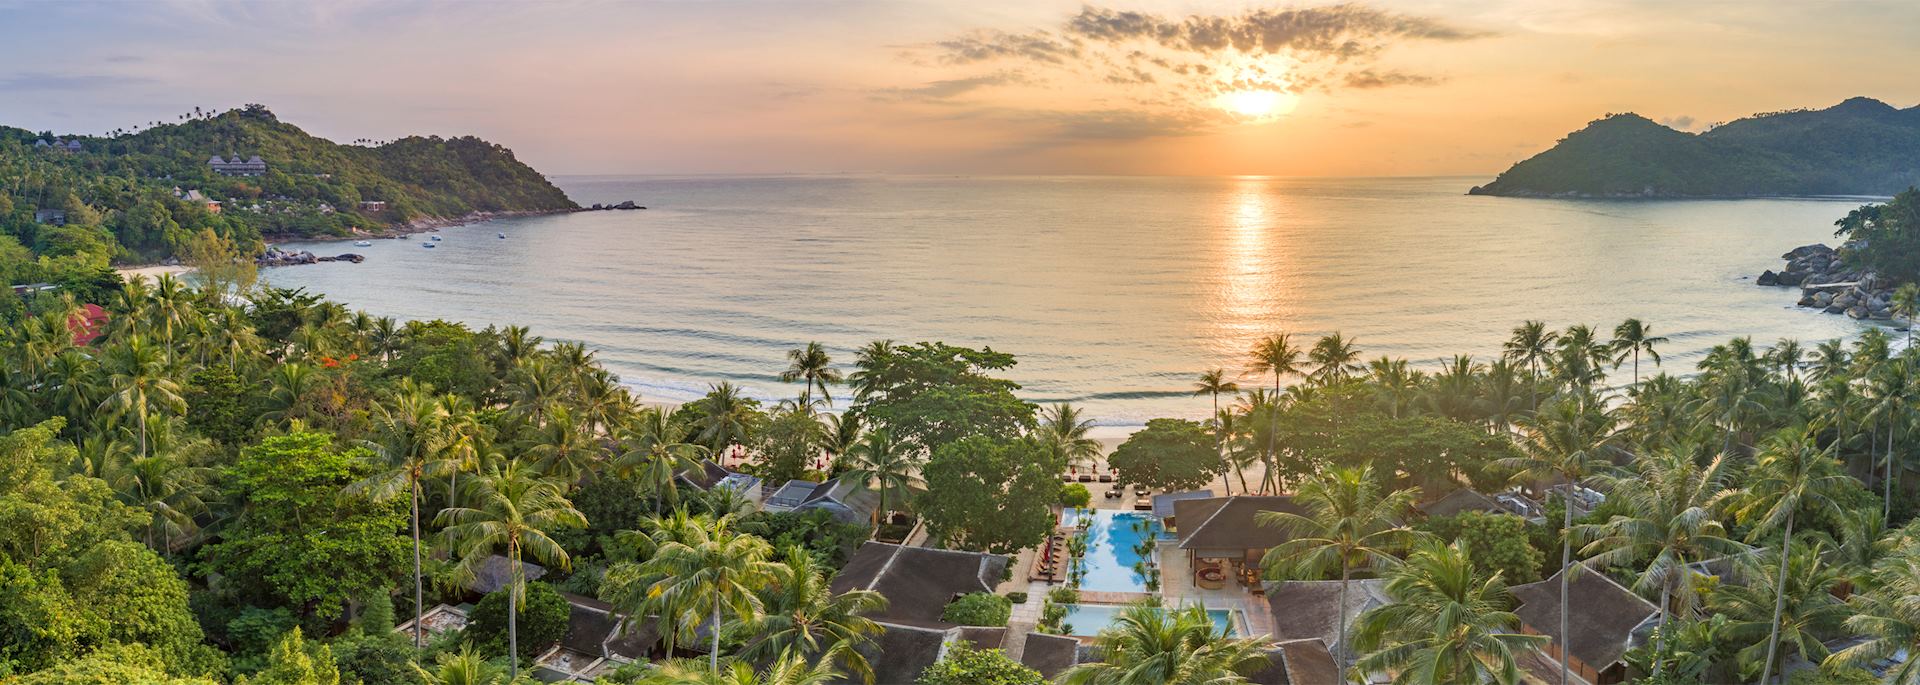 Aerial view of Anantara Rasananda Resort